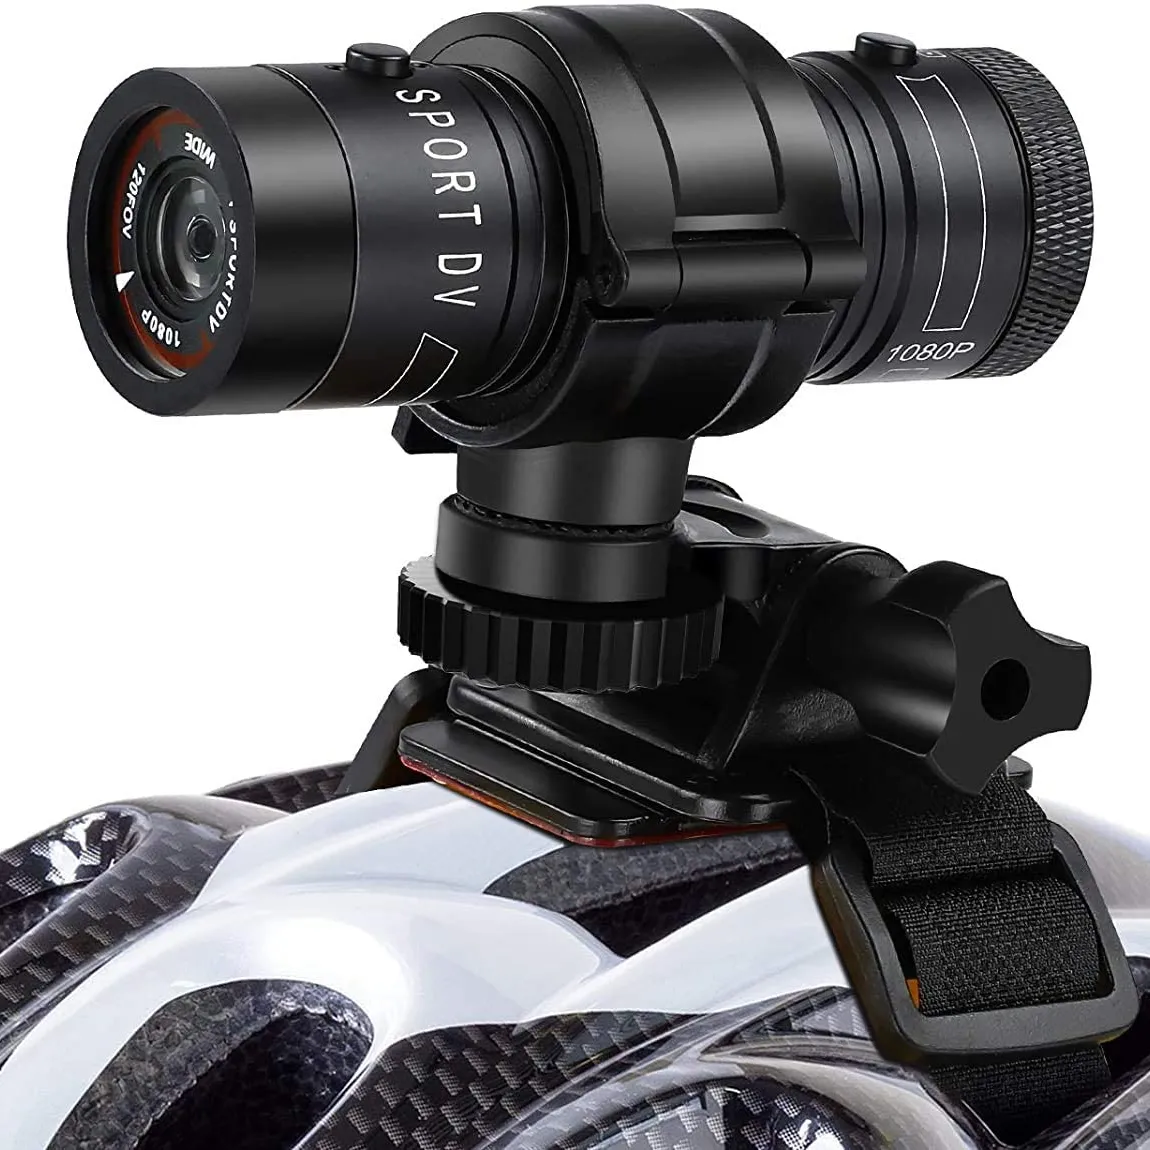 F9 1080P البسيطة الرياضة كاميرا الفيديو الرقمية دراجة نارية خوذة عمل DVR كاميرا فيديو في الهواء الطلق للماء مسجل فيديو